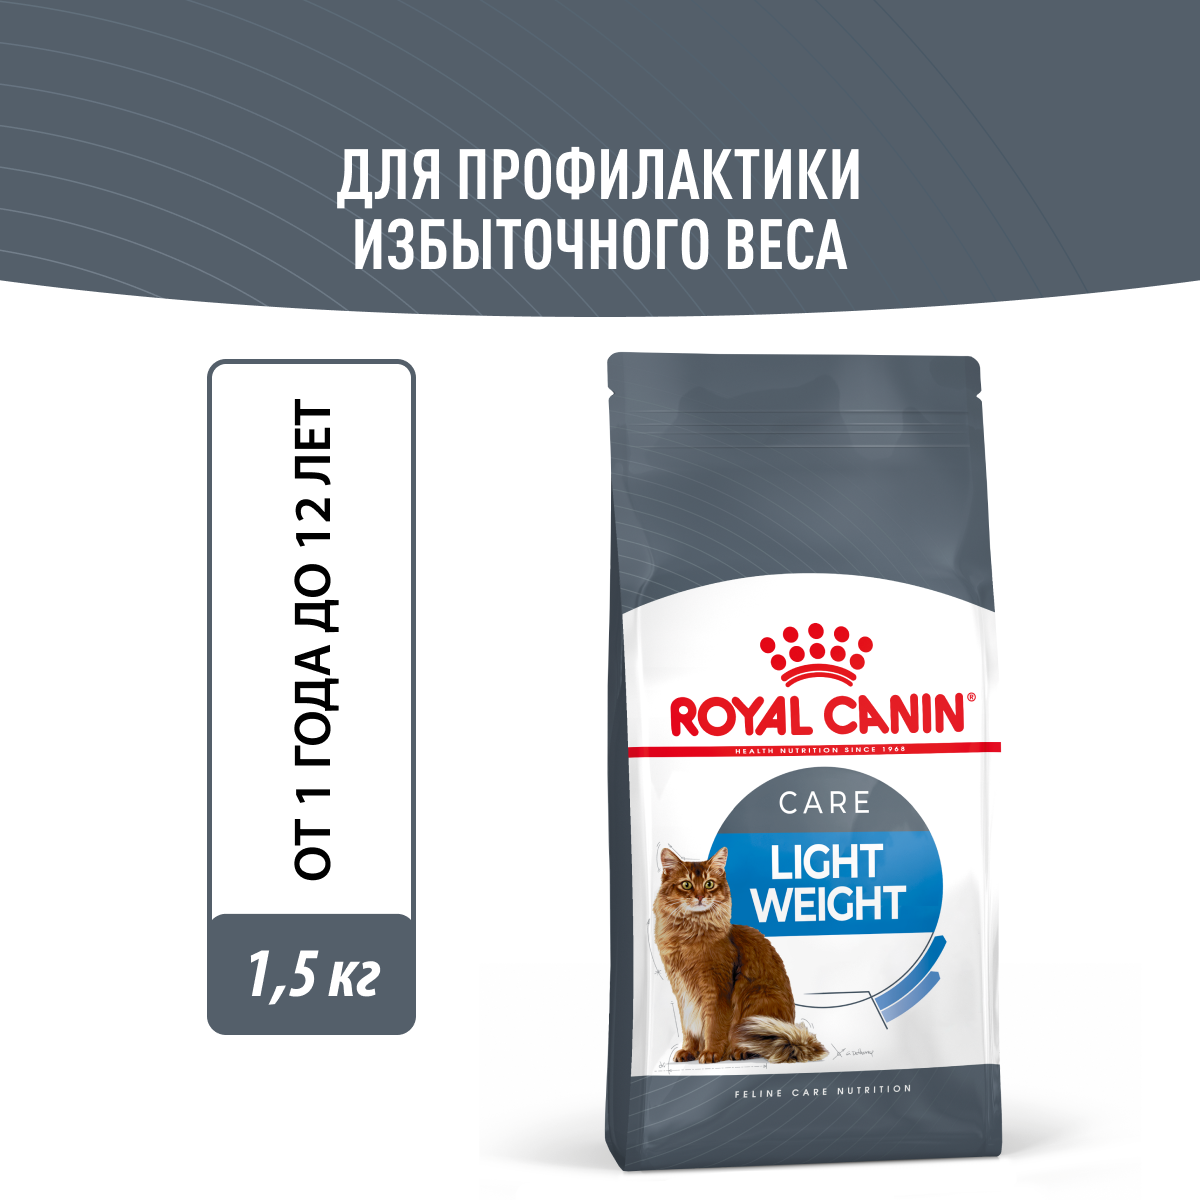 Сухой корм для взрослых кошек в целях профилактики избыточного веса Royal Canin Light Weight Care, 1,5 кг